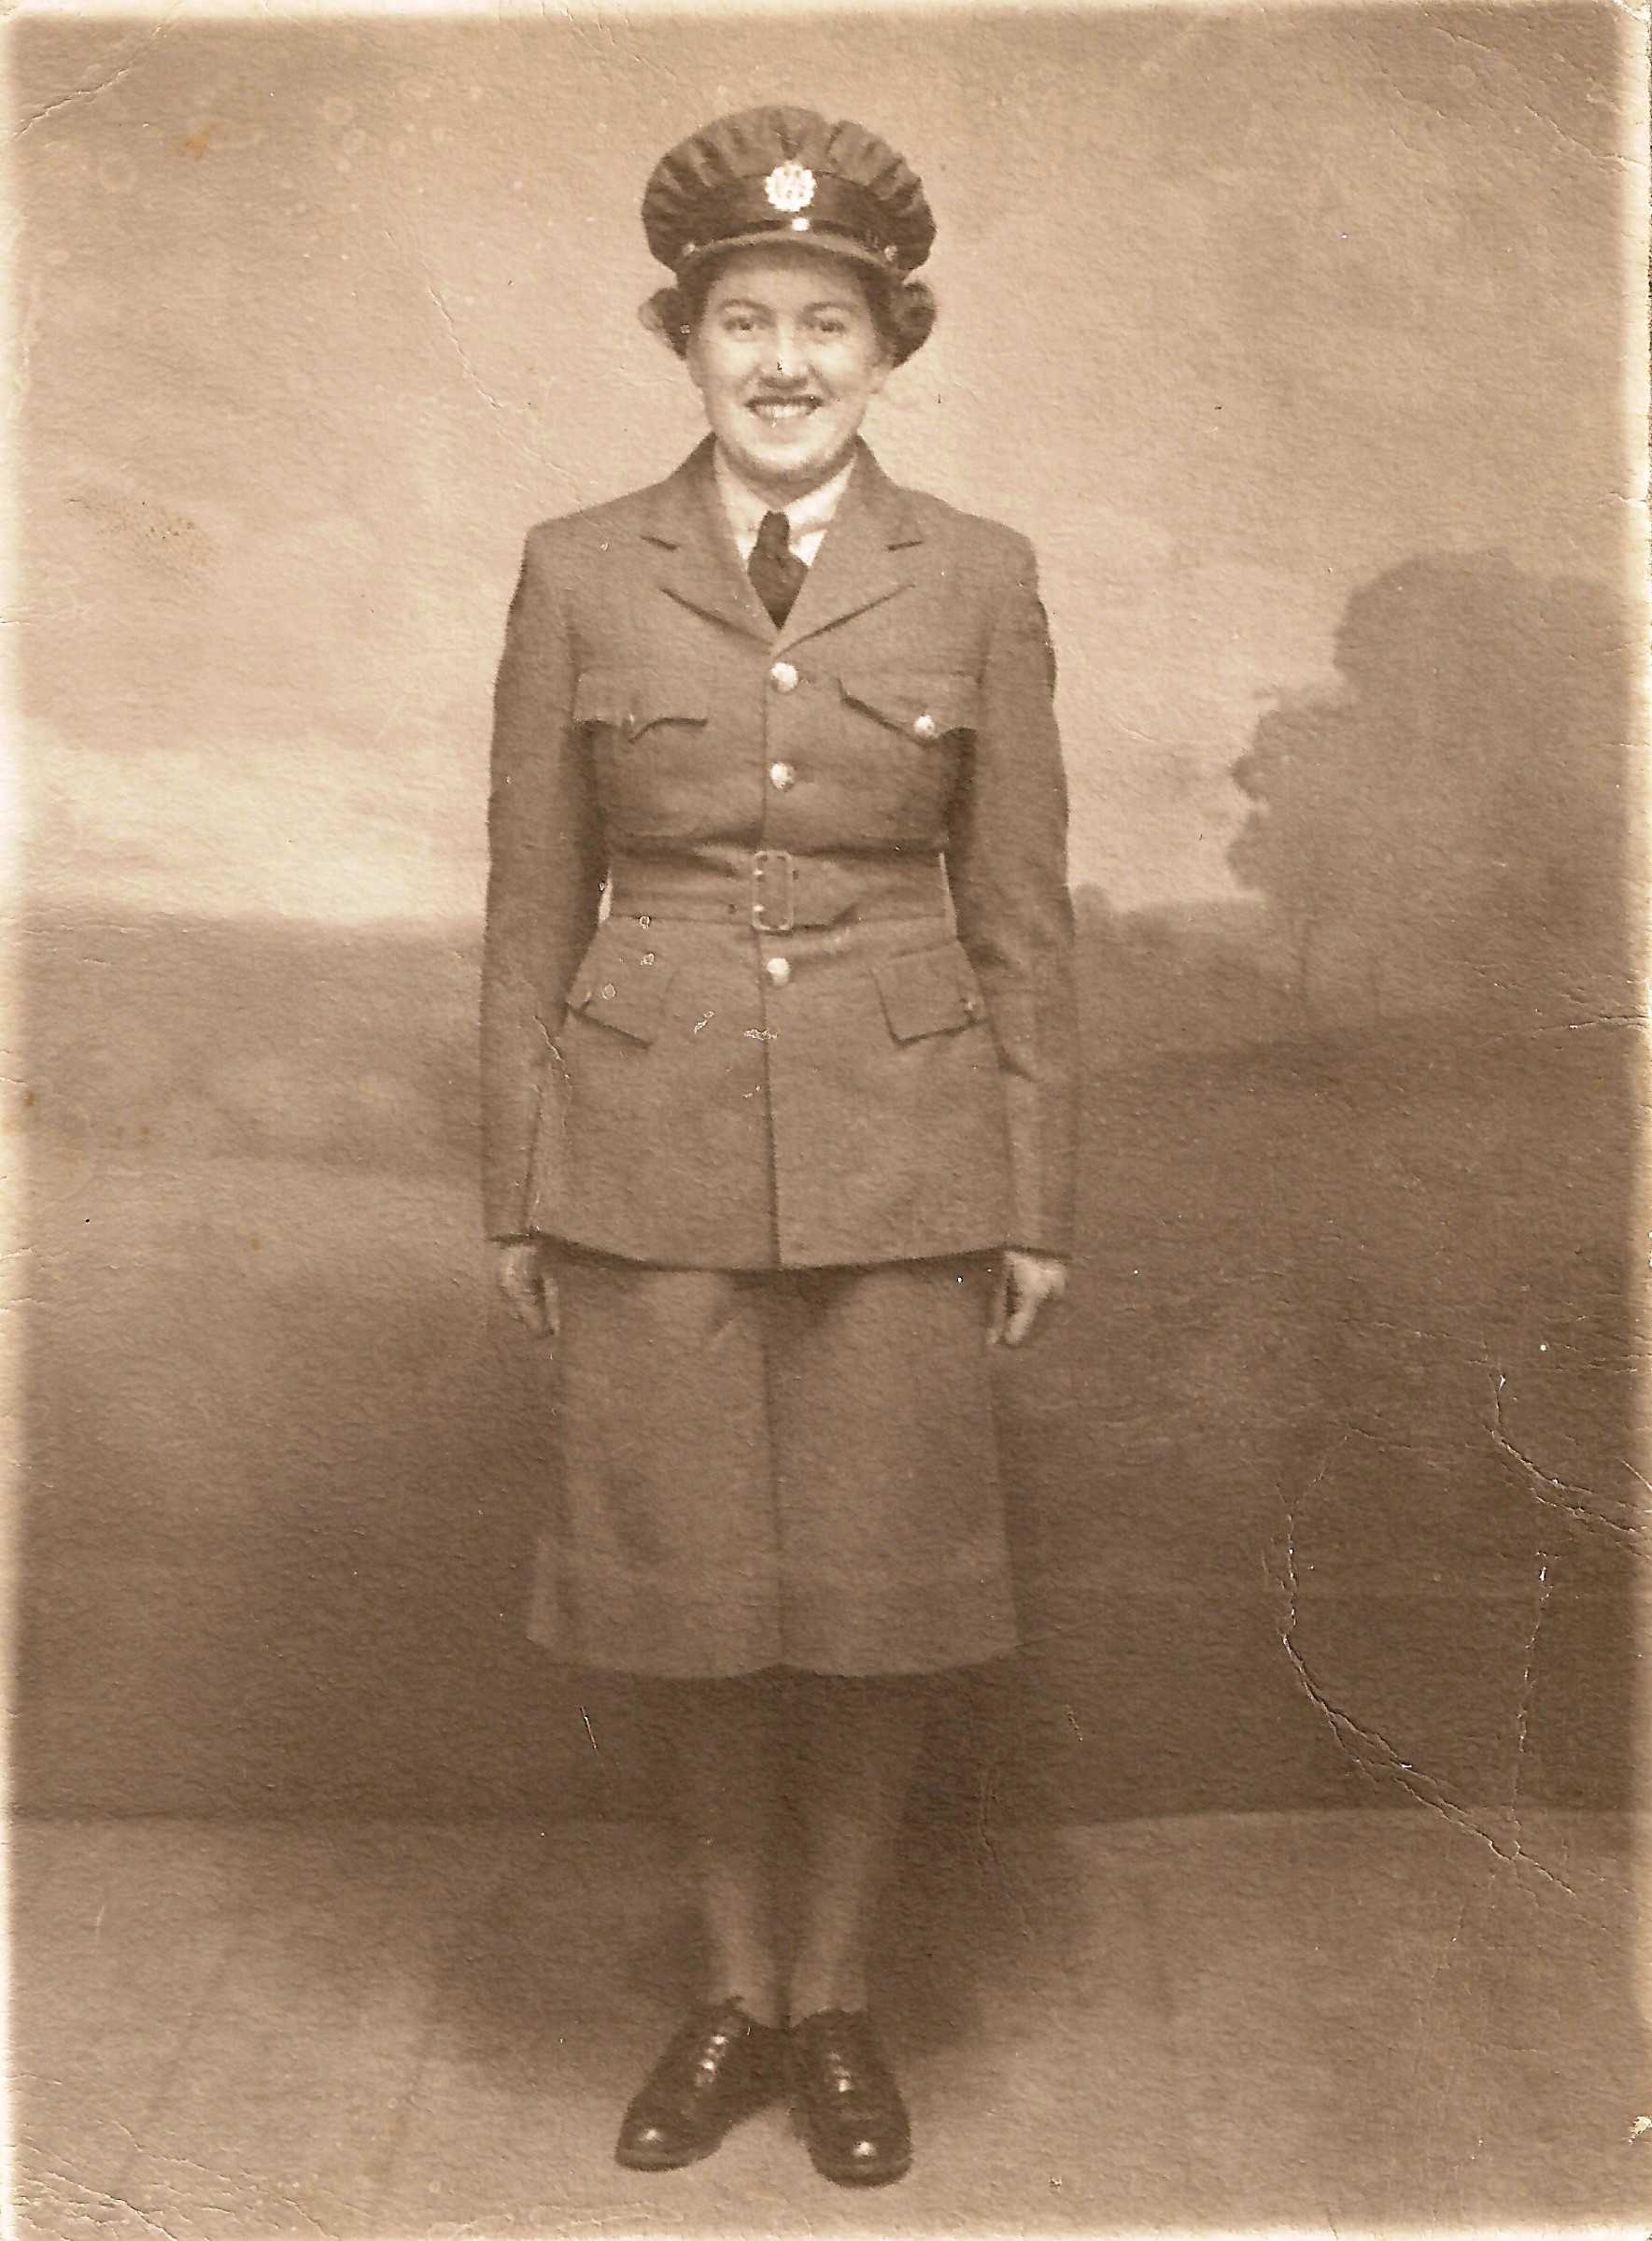 Photographie en tons sépia – Une jeune femme vêtue de son uniforme militaire complet, qui comporte une jupe. Elle est souriante, au garde-à-vous.